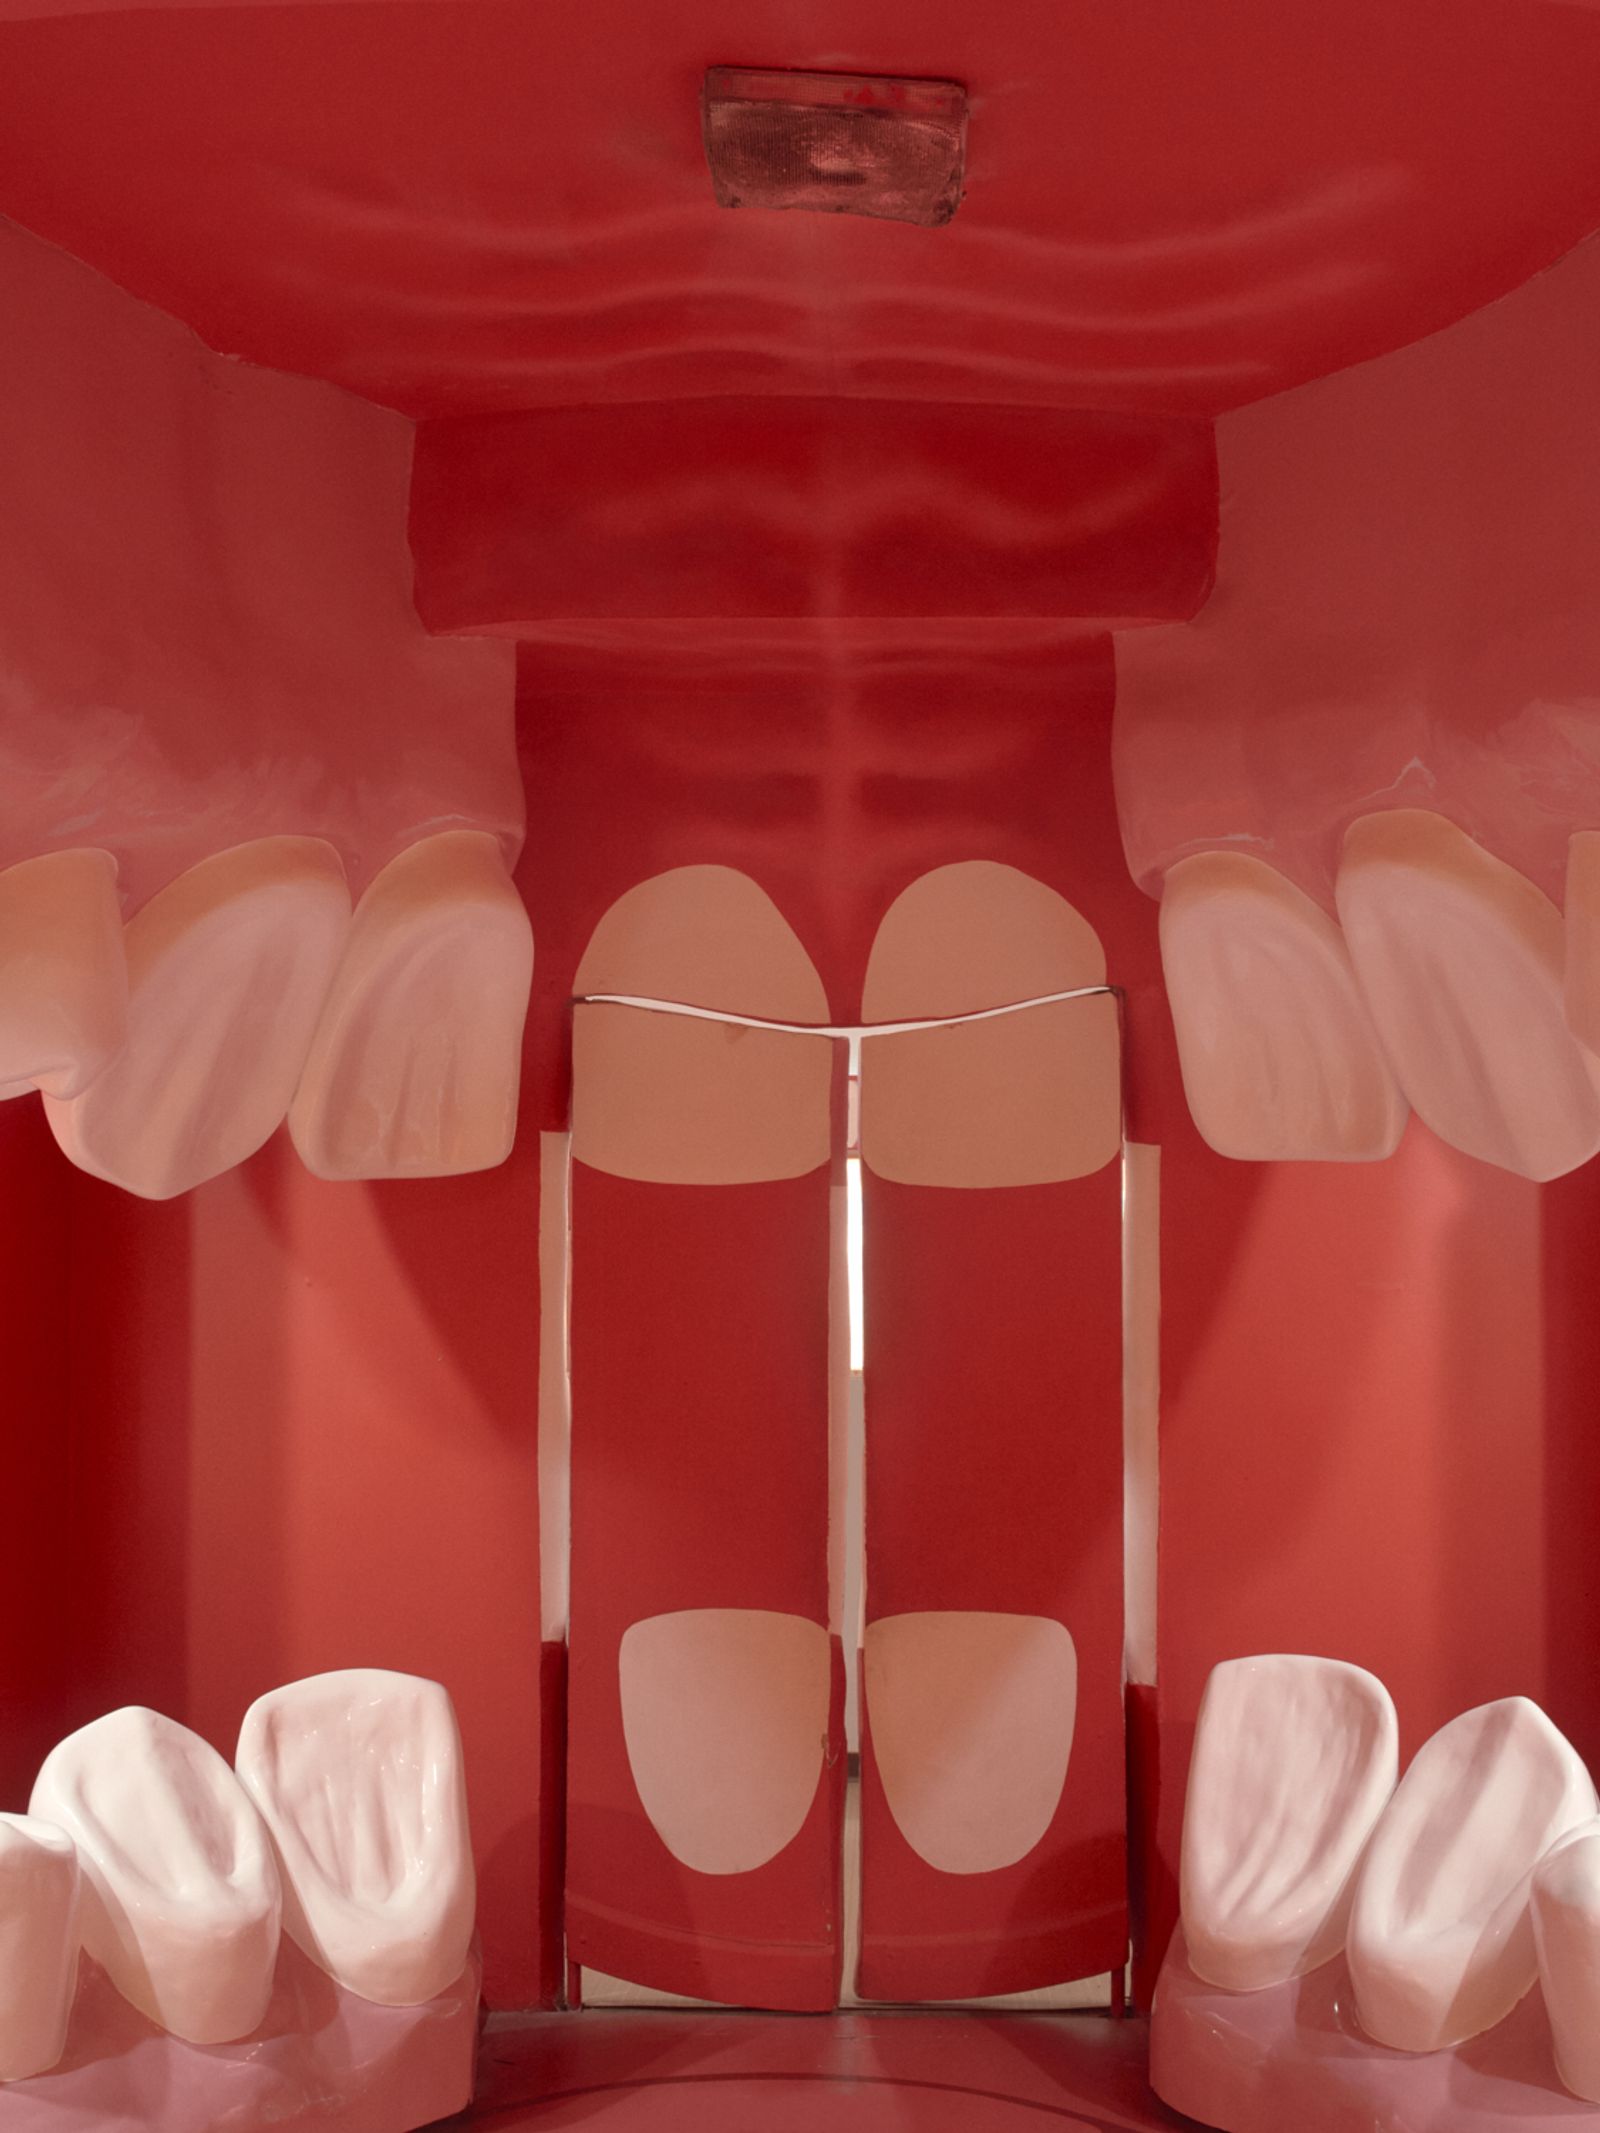 © Joel Jimenez - Large scale model of a human's mouth inside.